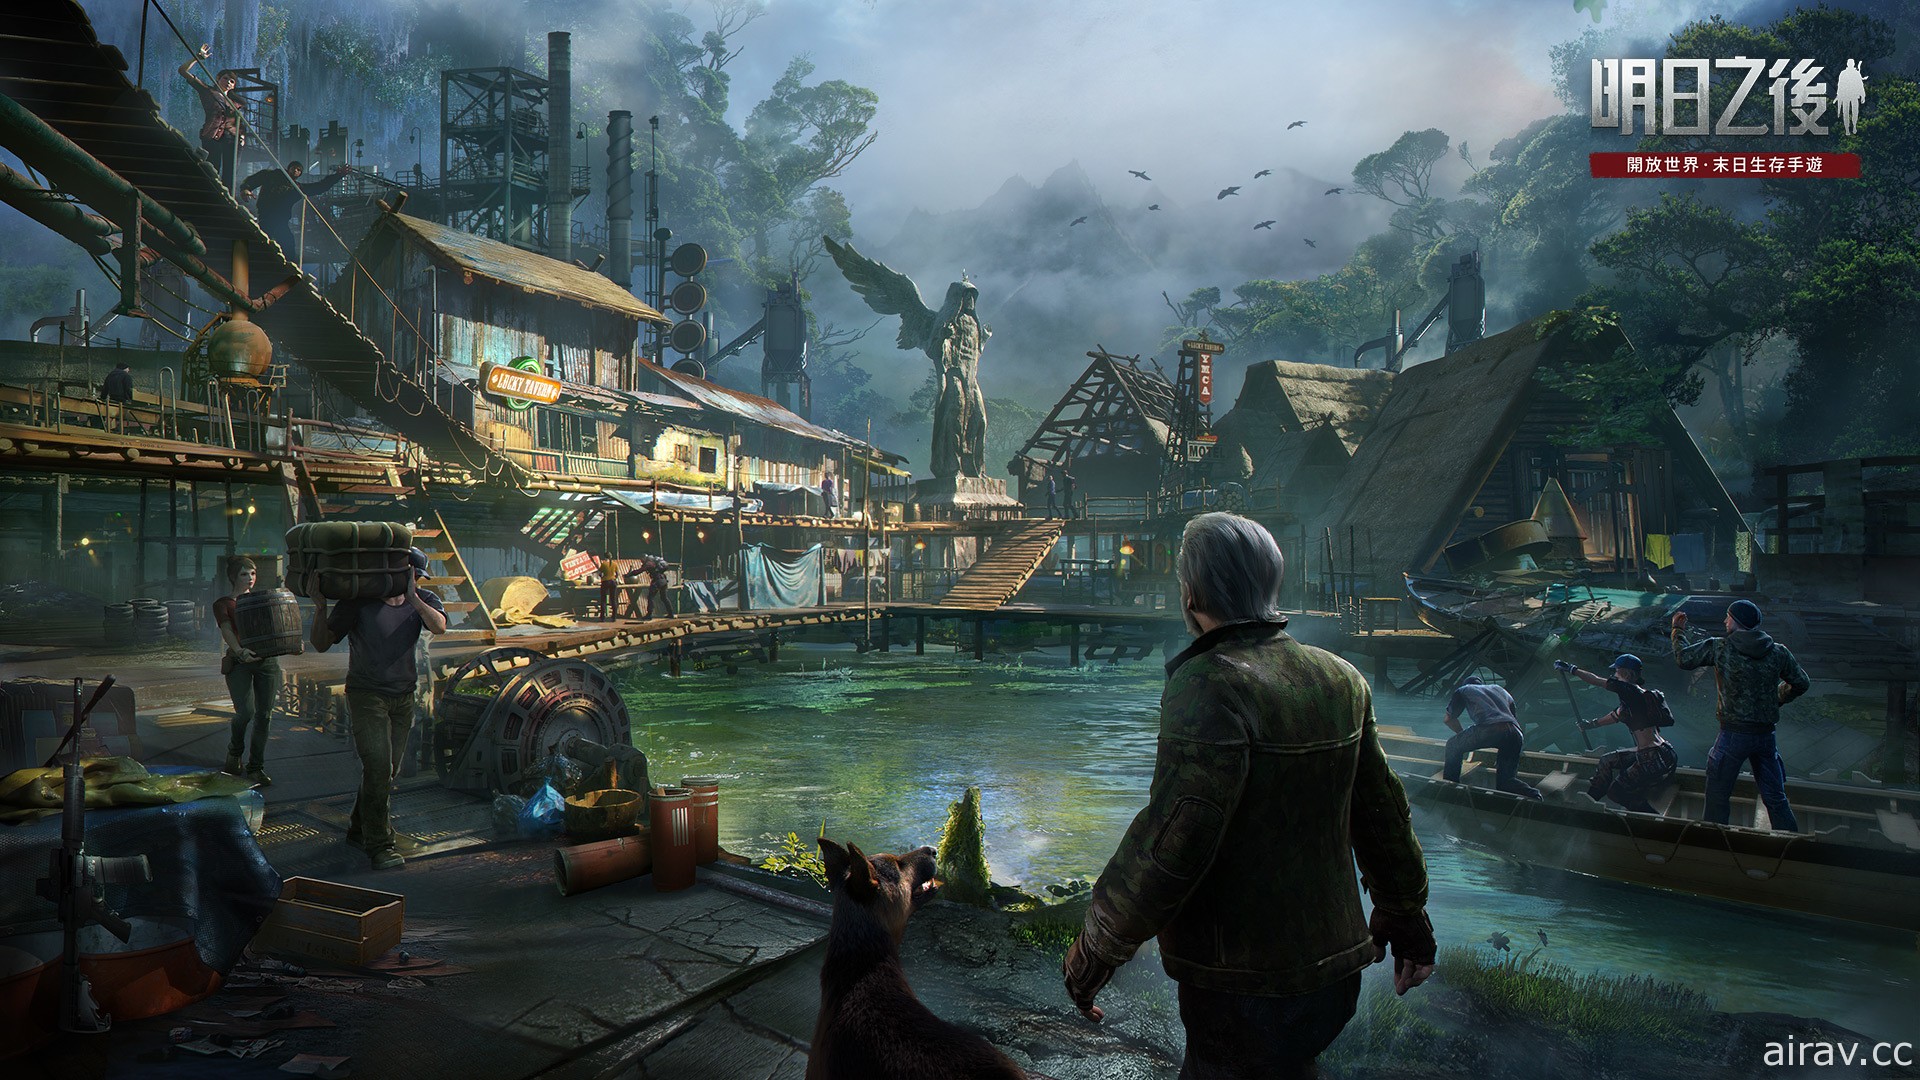 《明日之后》大型跨服赛季玩法“庇护城决战”上线 跨服探索开放世界的末日体验